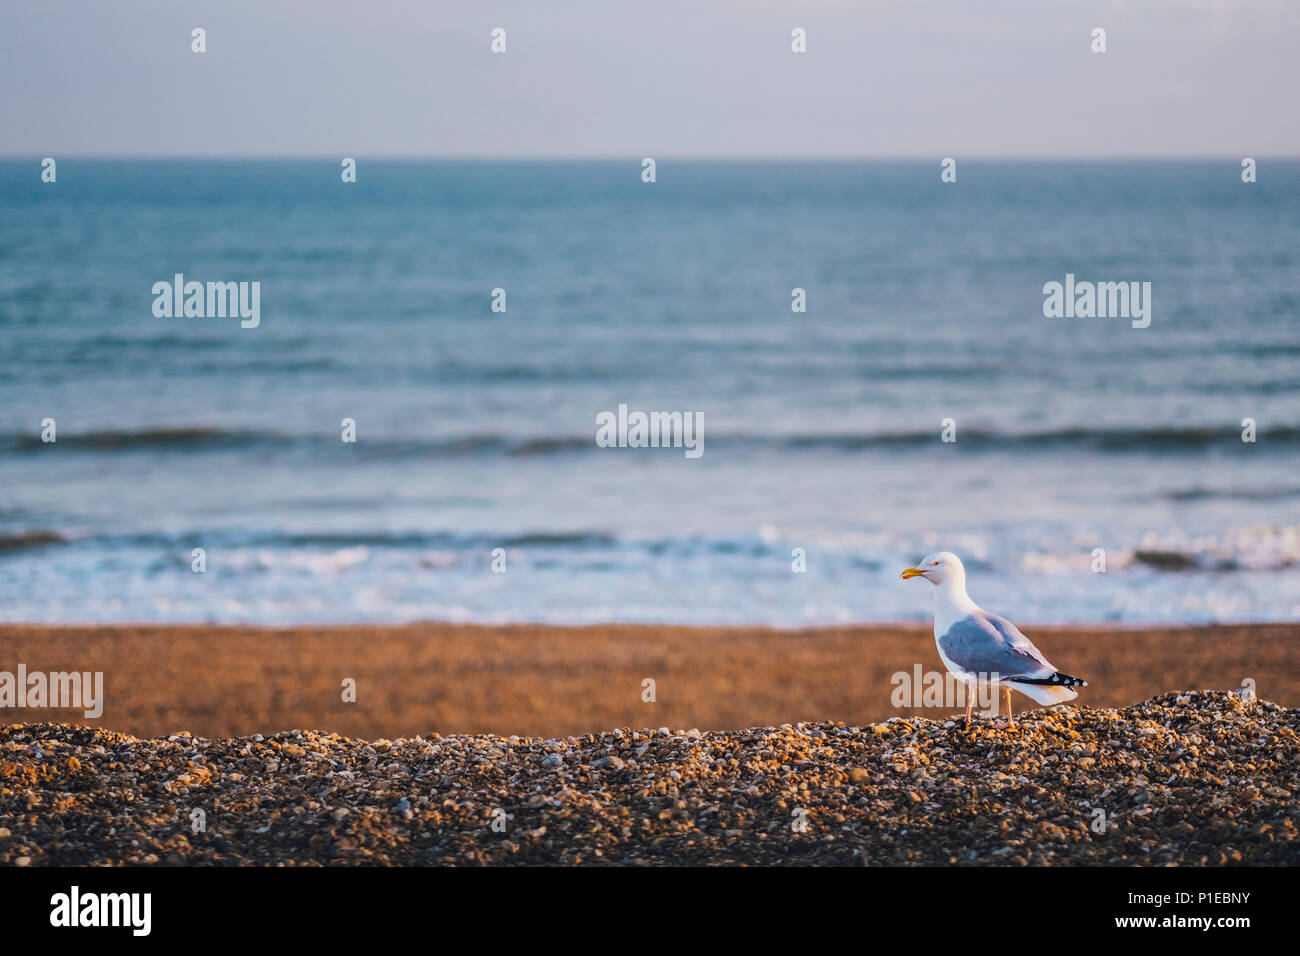 Seagull on the pebble beach, Brighton, England Stock Photo